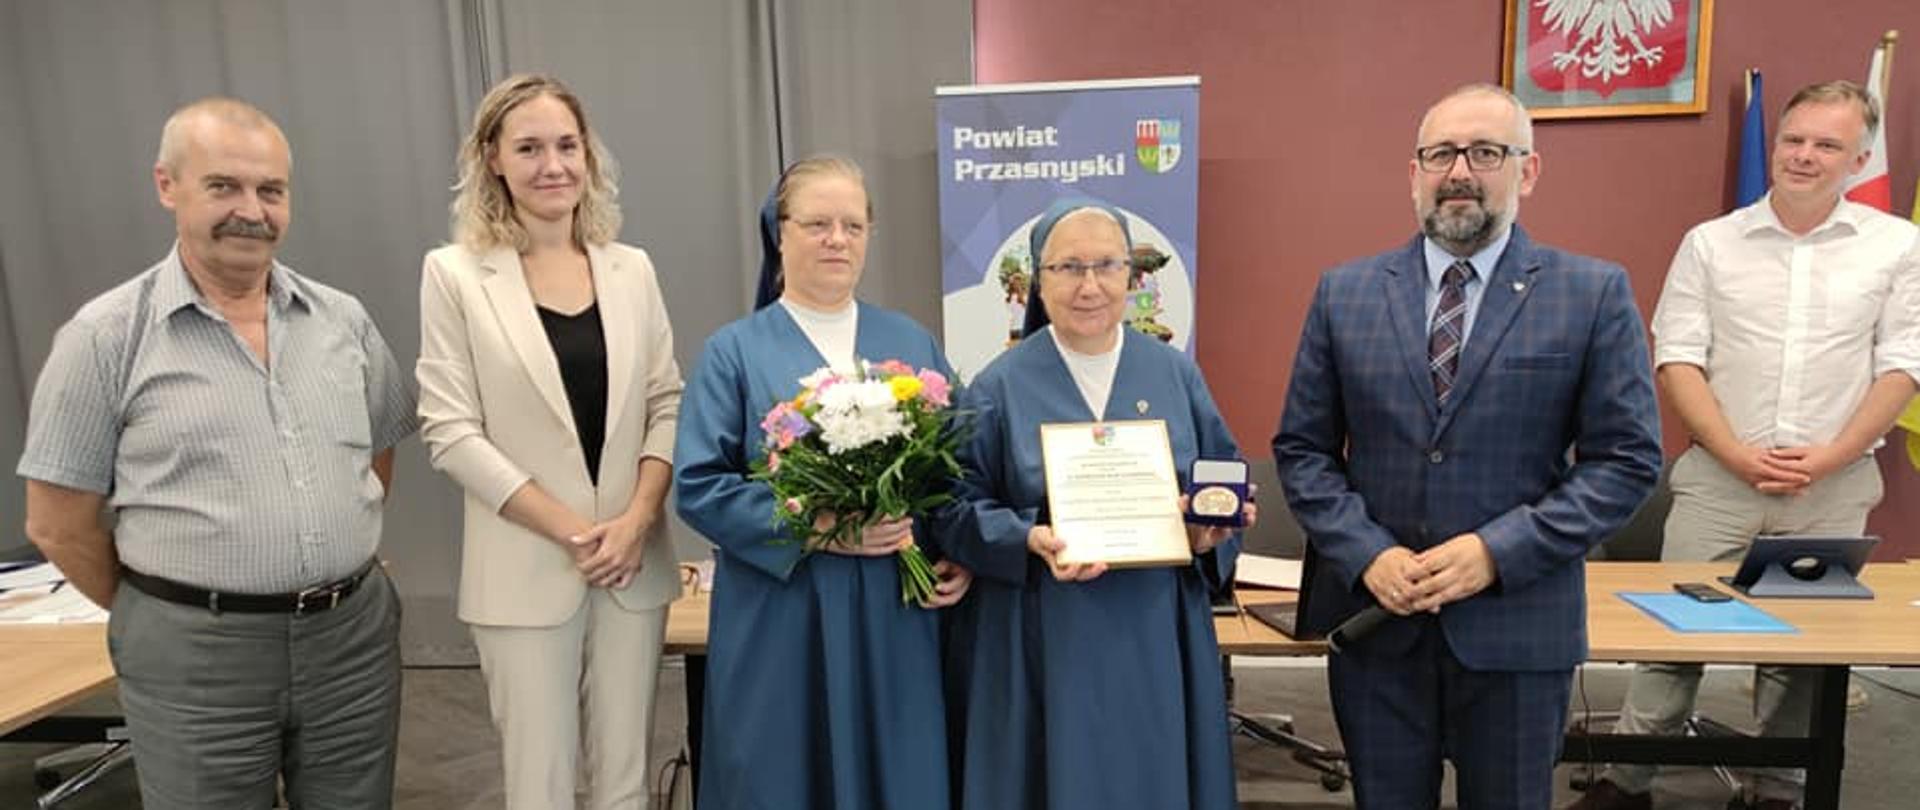 Siostra Danuta Pokucińska została uhonorowana za jej pełną poświęceń pracę na rzecz mieszkańców ze szczegółami potrzebami.